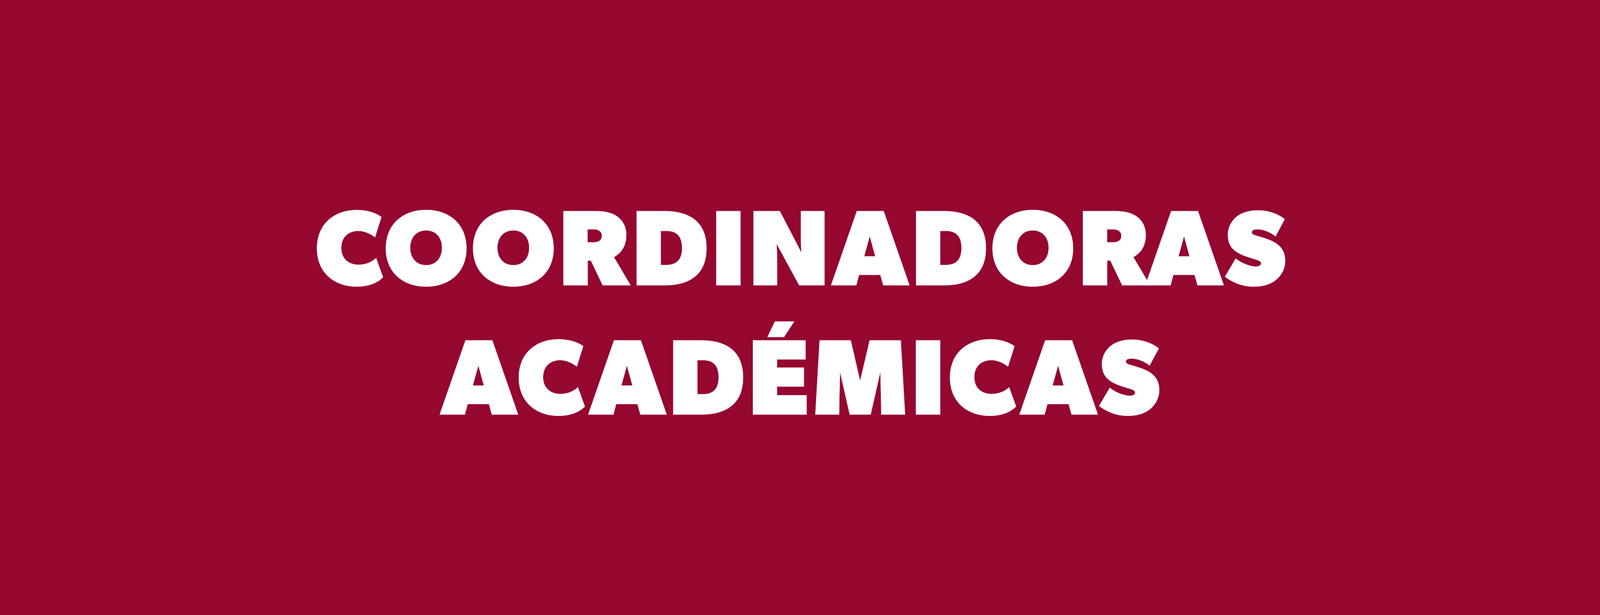 Coordinadoras Académicas de la Universidad de los Andes